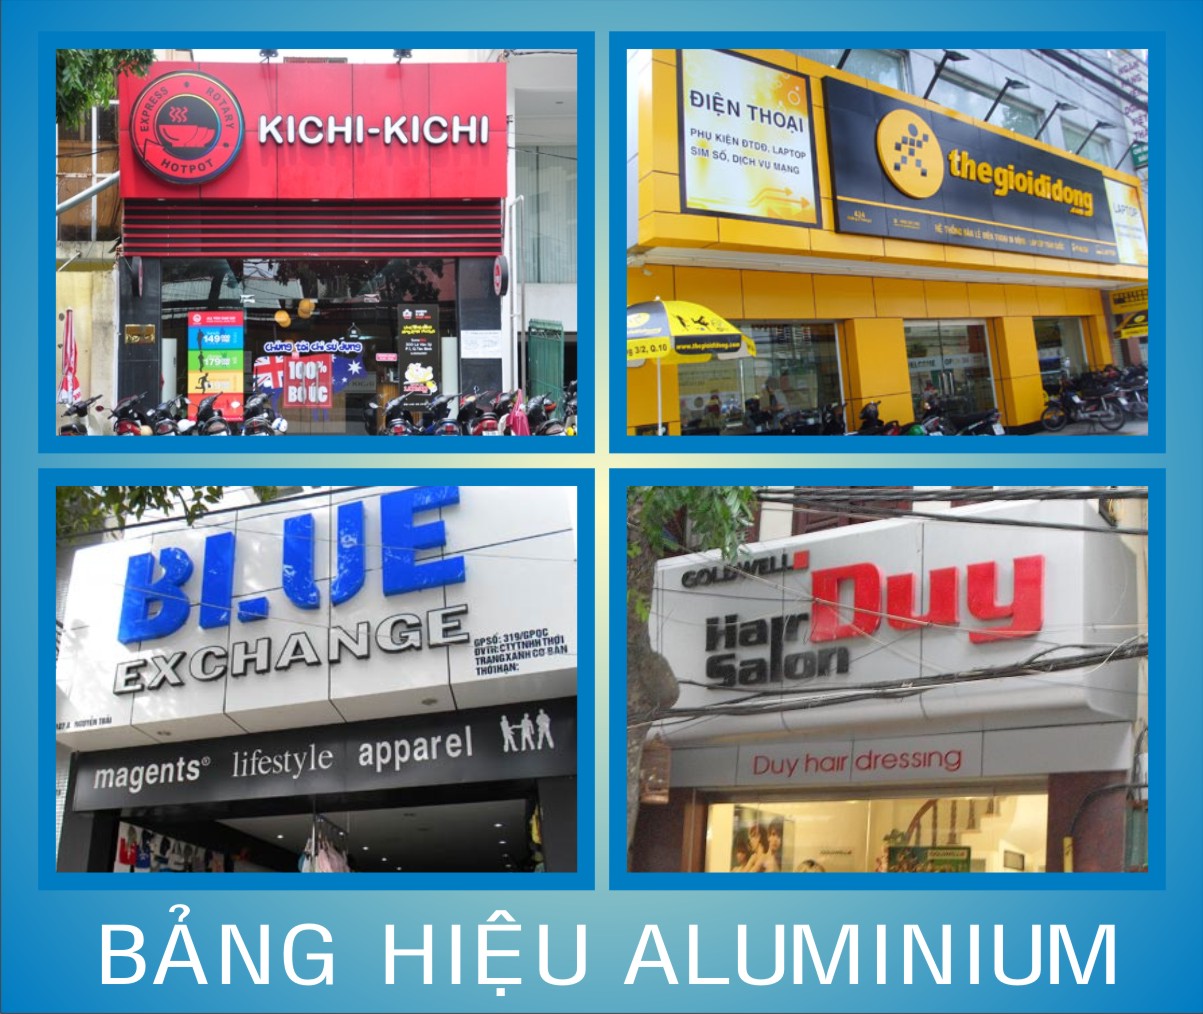 Chuyên thiết kế, thi công các loại biển, bảng hiệu quảng cáo giá rẻ tại Pleiku Gia Lai Chuyen Thiet Ke Thi Cong Cac Loai Bien Bang Hieu